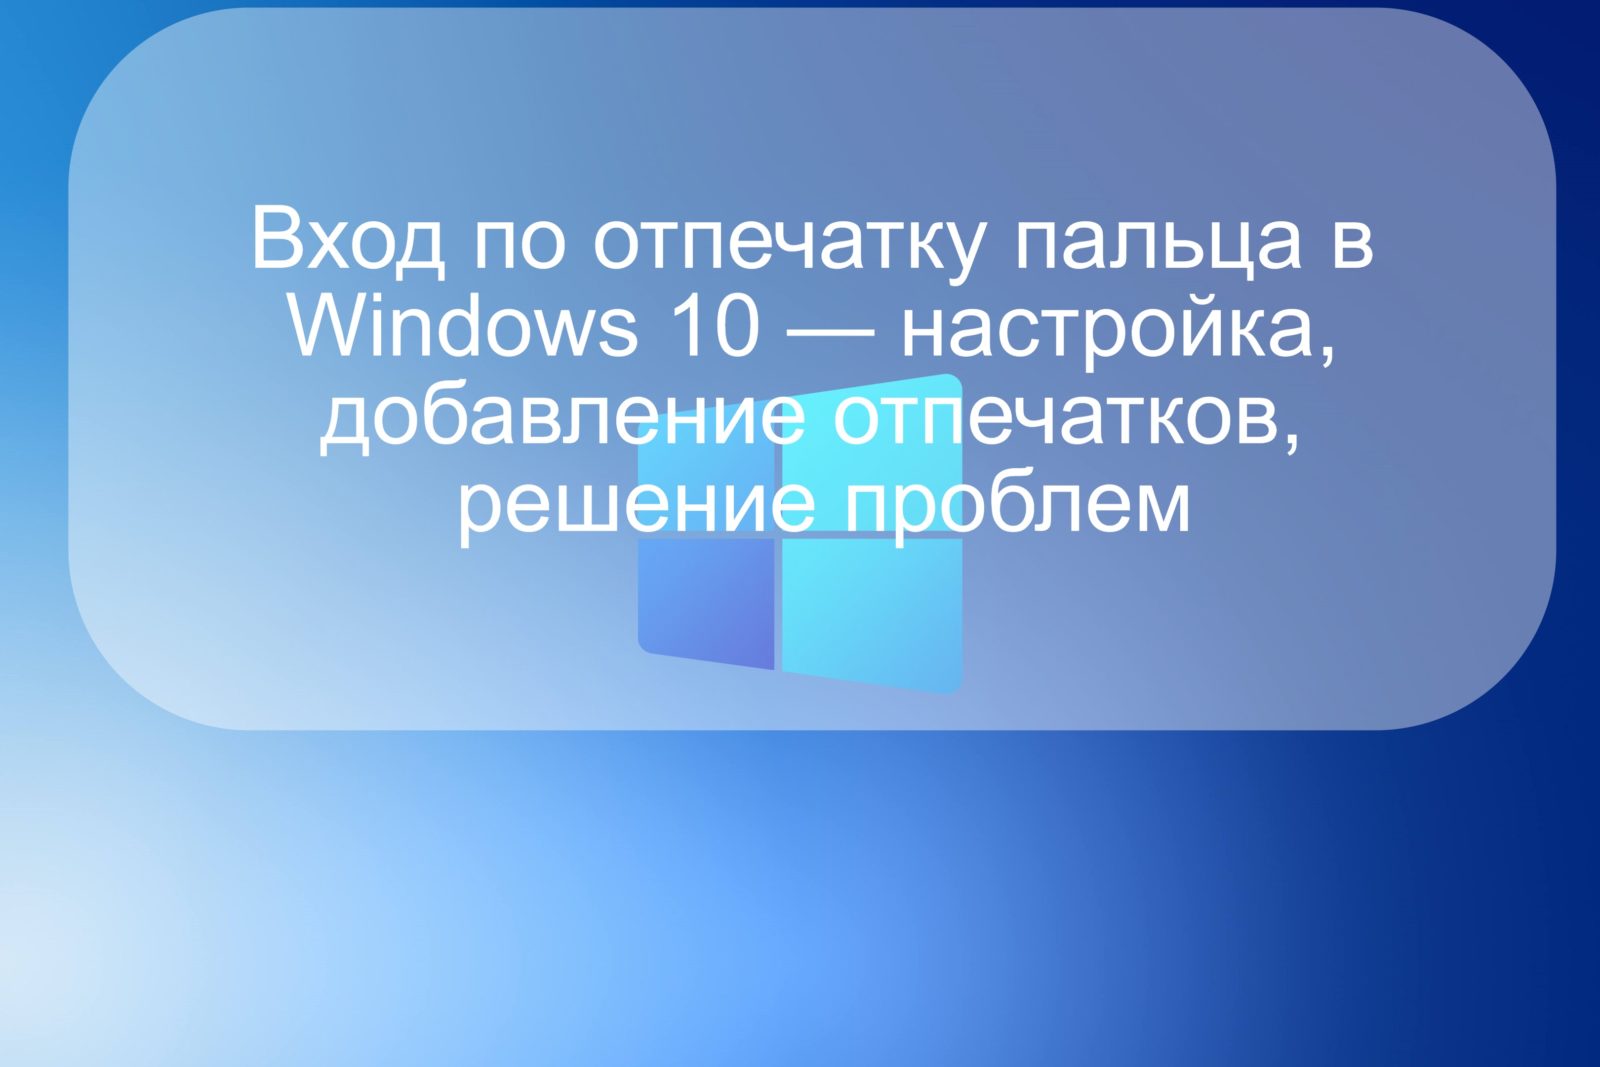 Вход по отпечатку пальца в Windows 10 — настройка, добавление отпечатков, решение проблем